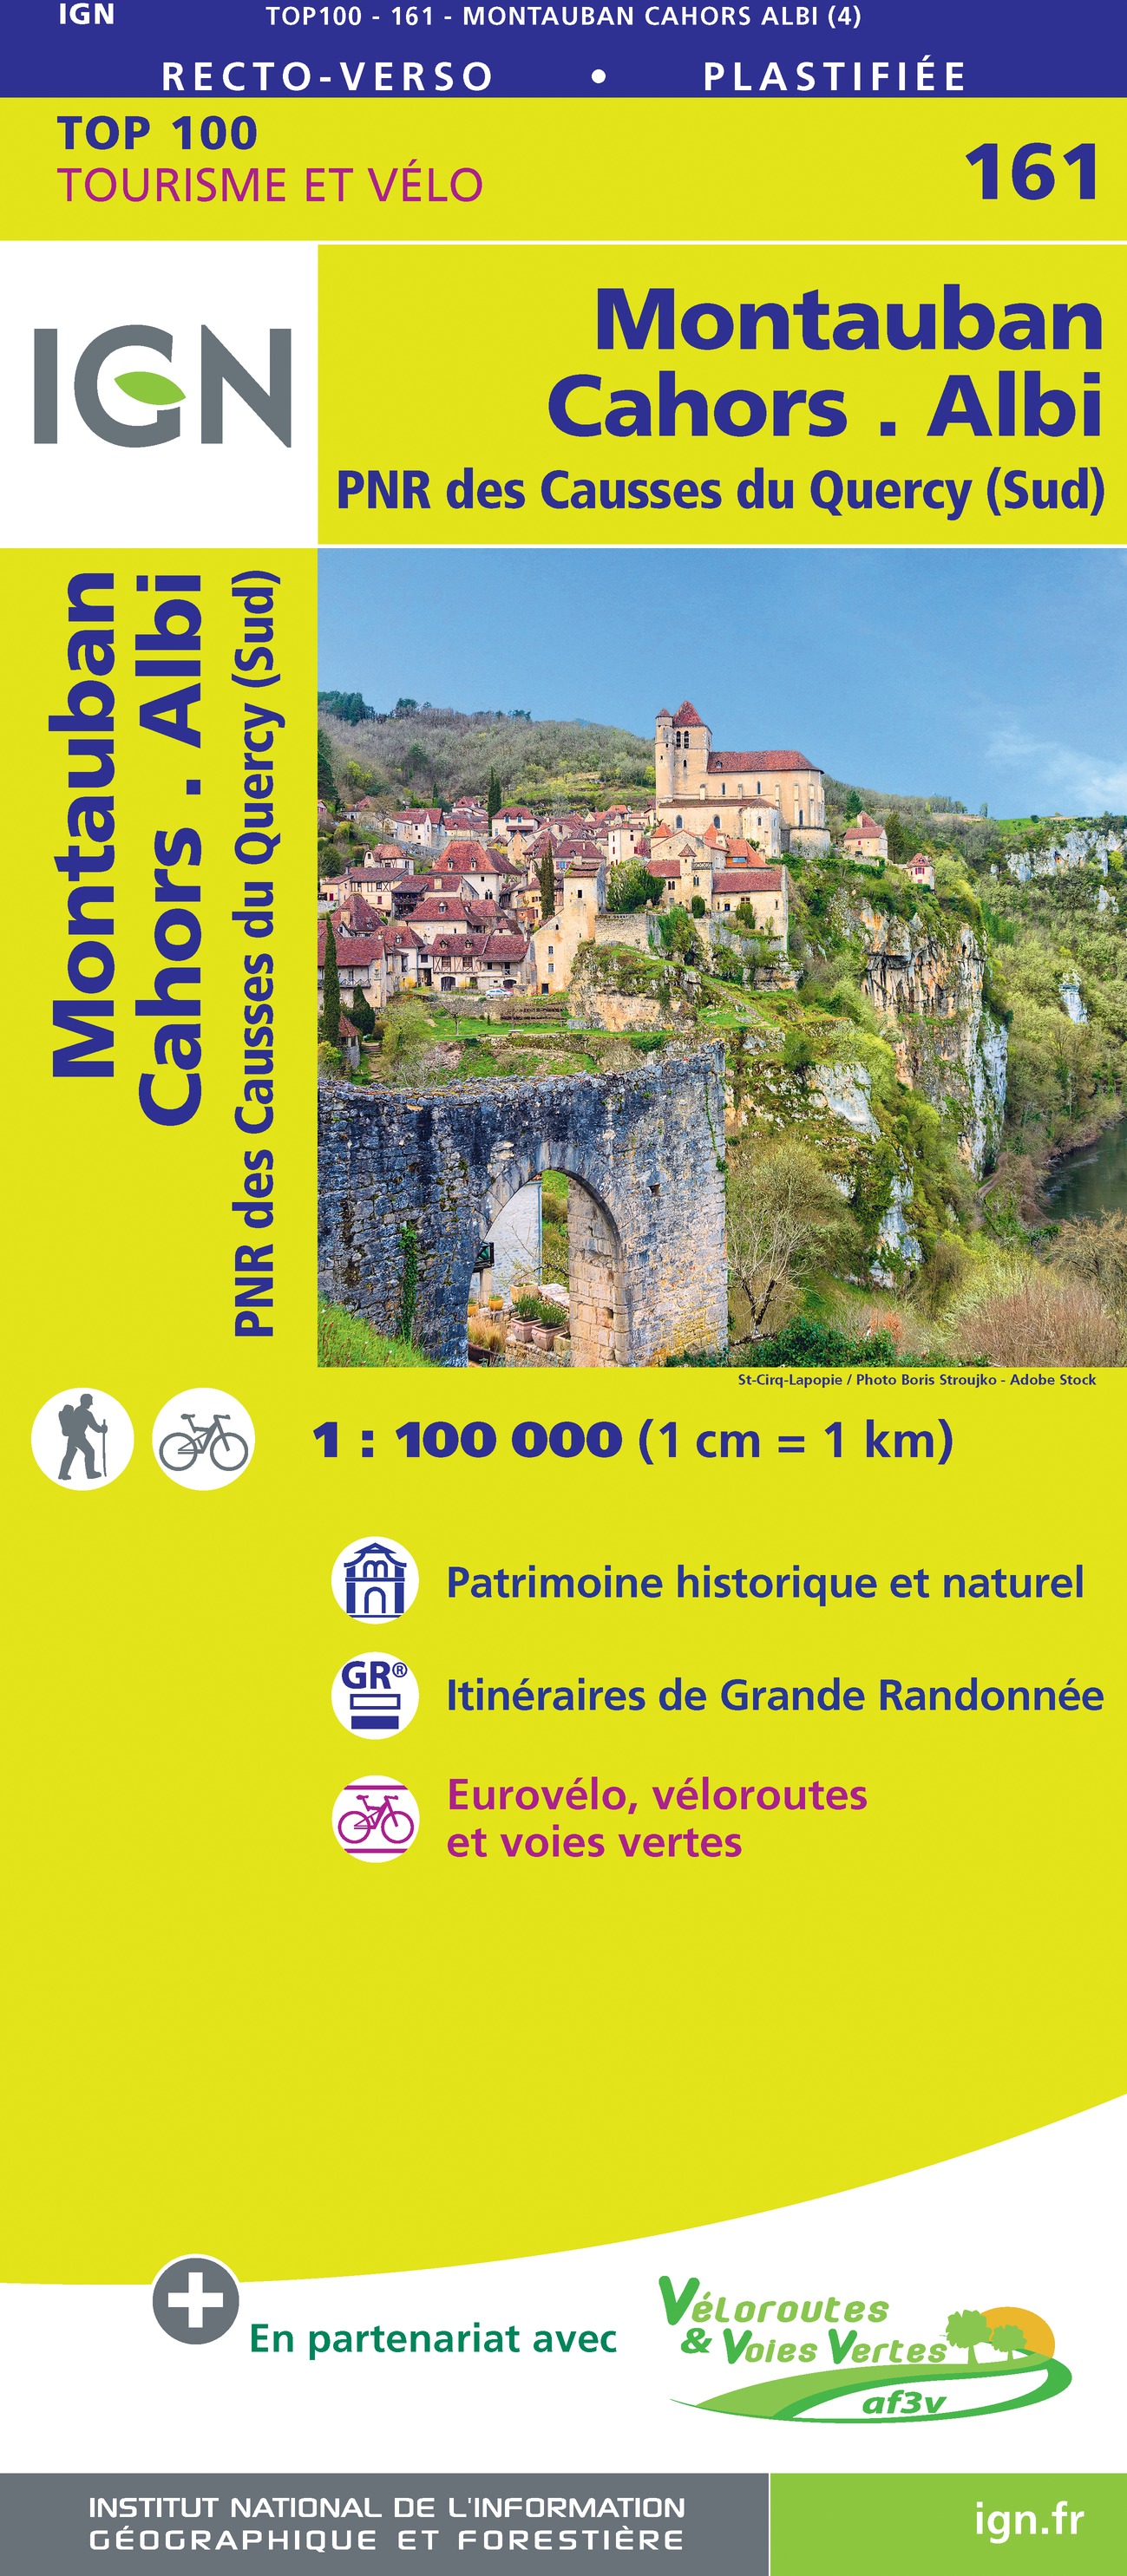 Online bestellen: Fietskaart - Wegenkaart - landkaart 161 Cahors - Montauban - Albi | IGN - Institut Géographique National